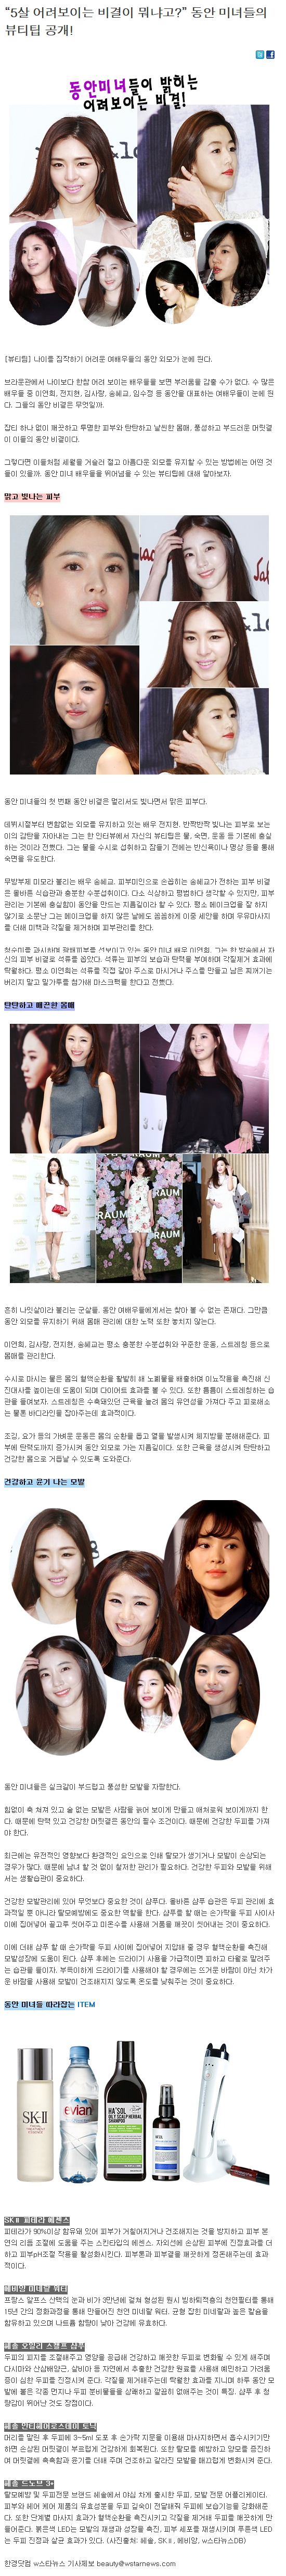 [한경닷컴-2014.05.28] “5살 어려보이는 비결이 뭐냐고?” 동안 미녀들의 뷰티팁 공개!